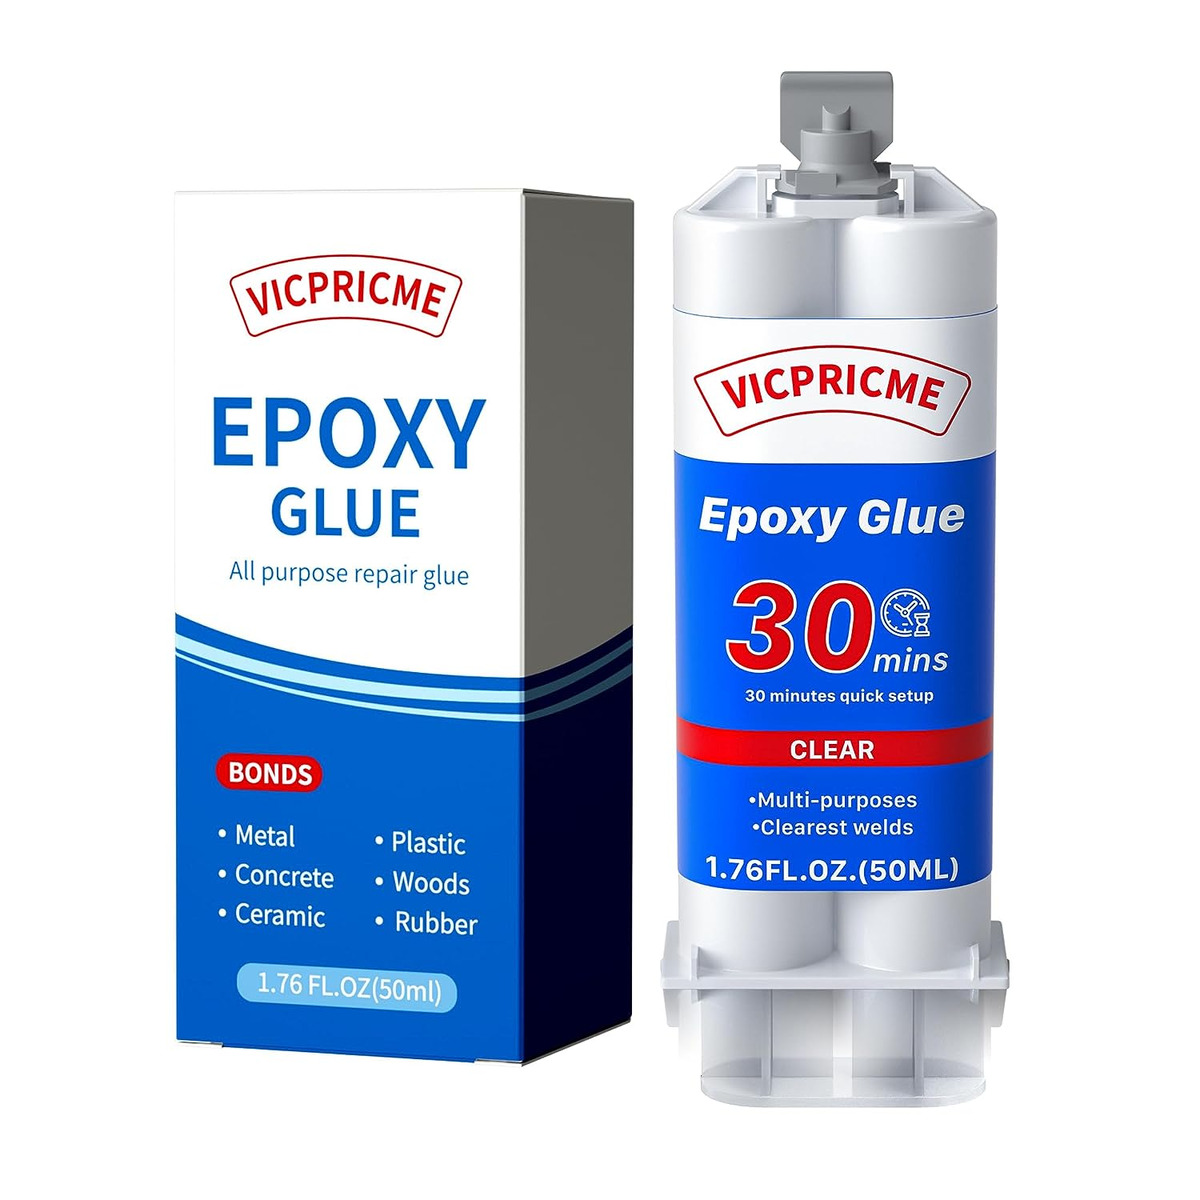 Epoxy Resin Syringe Stock Photo - Download Image Now - Glue